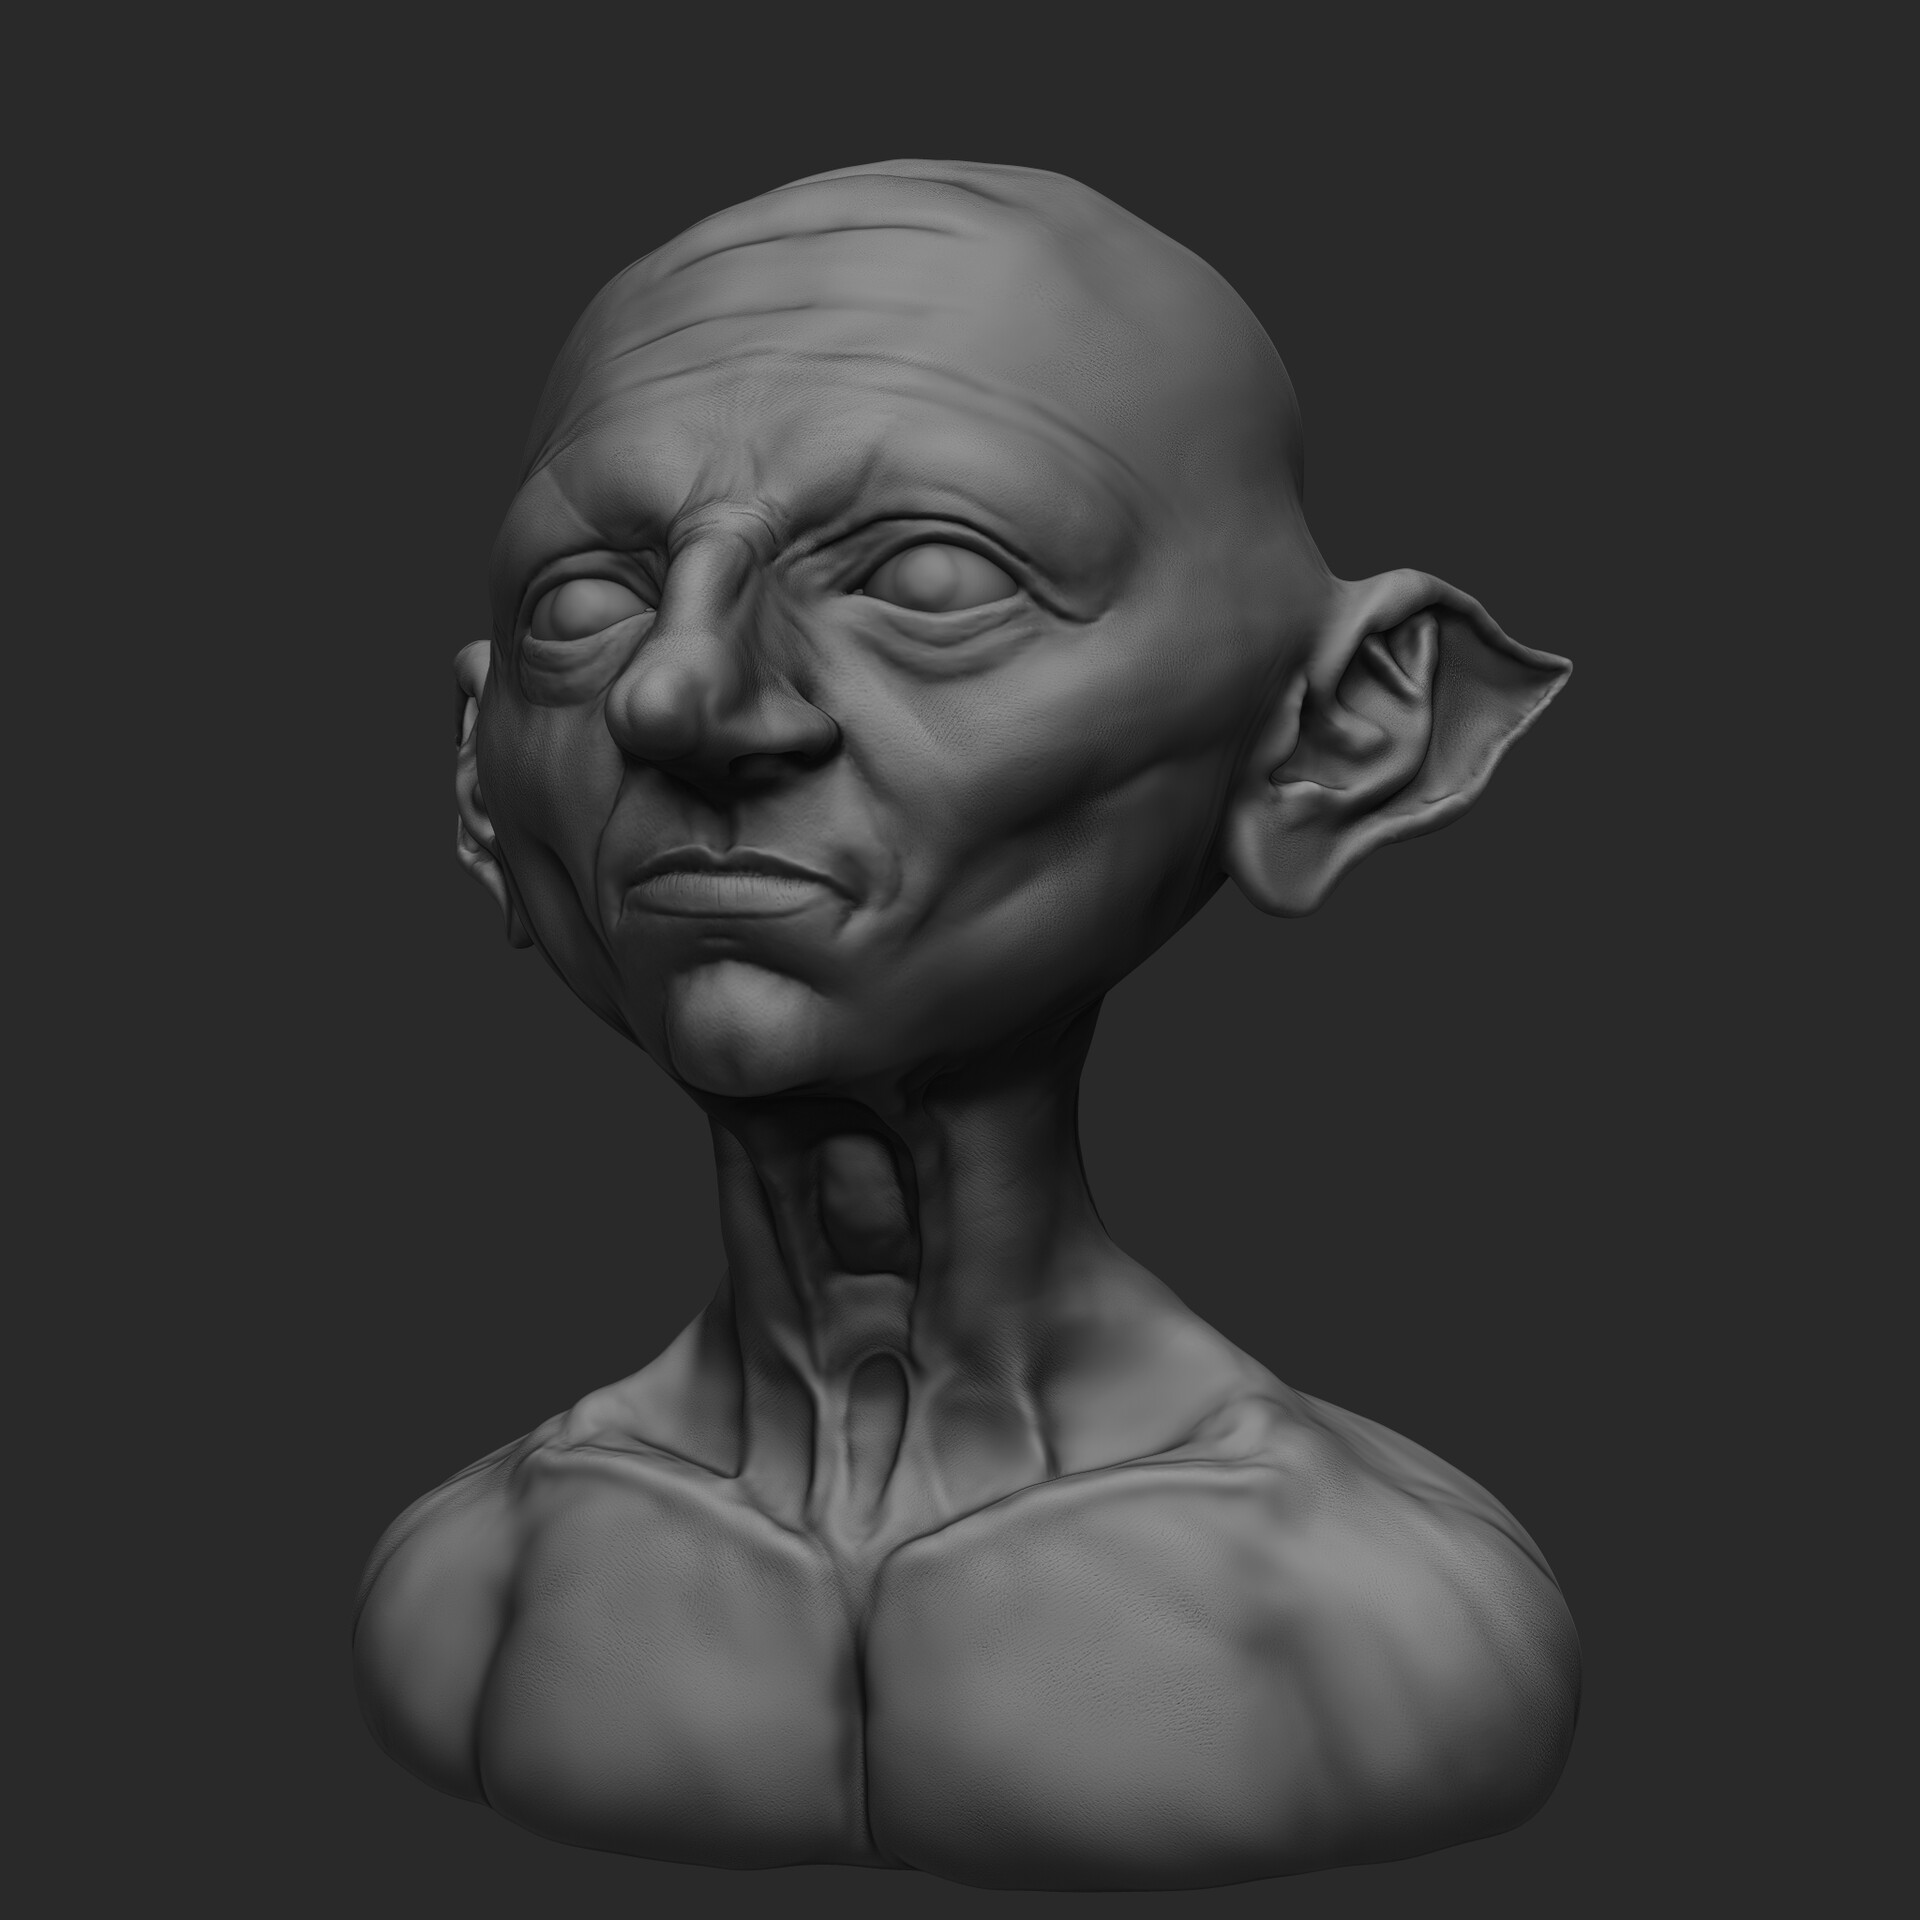 ArtStation - Sculpt a goblin in ZBrush